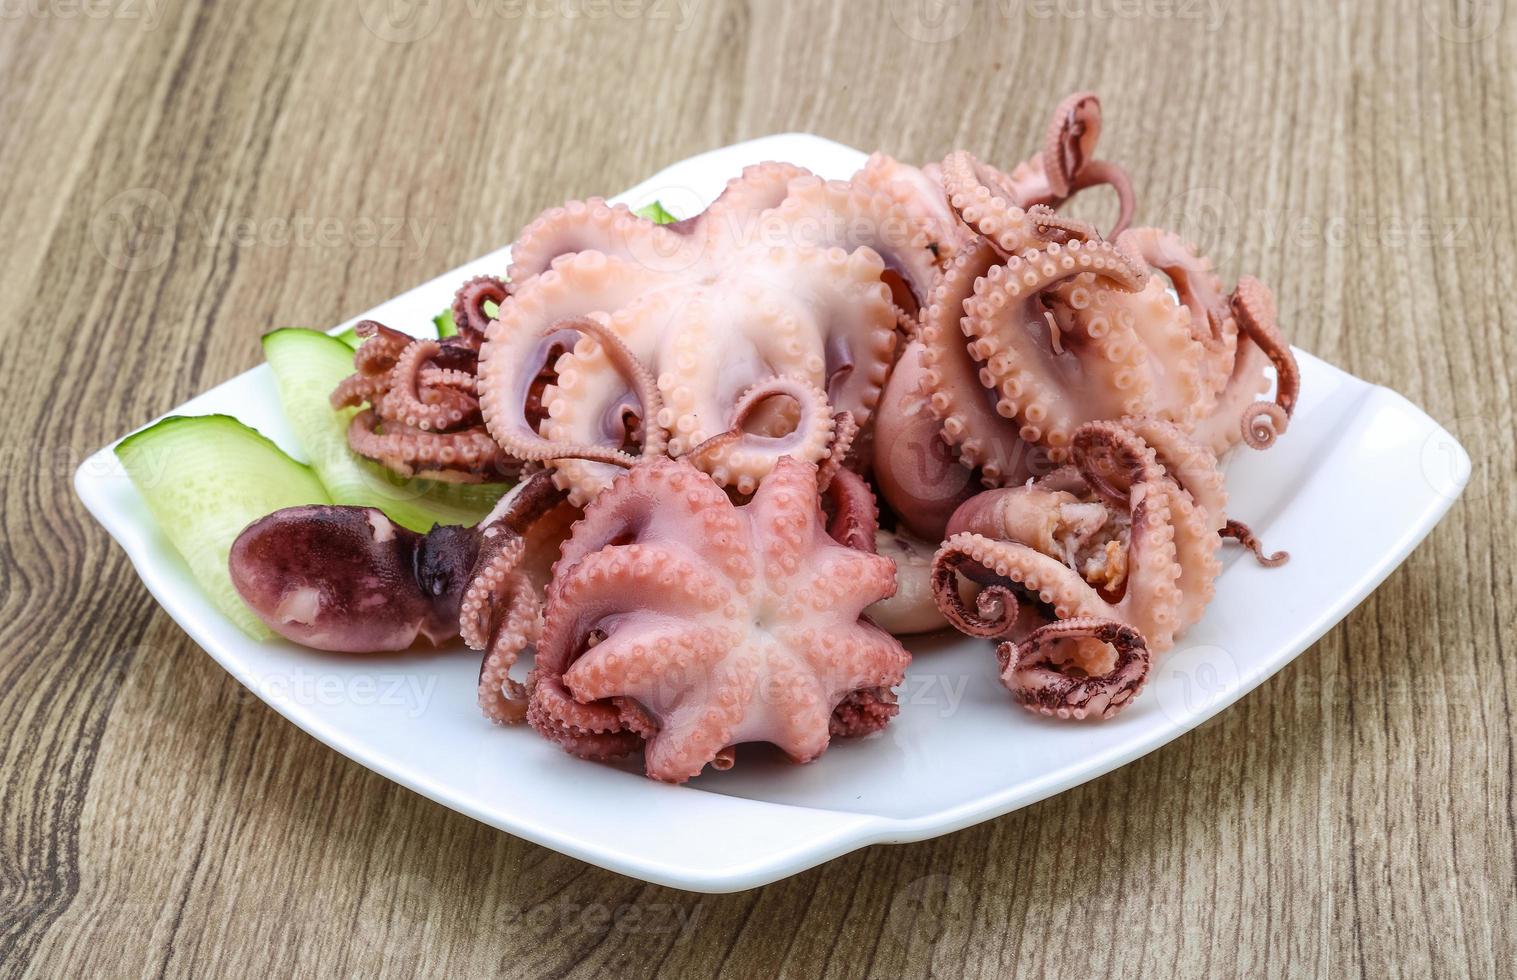 Marinierter Oktopus auf dem Teller und Holzhintergrund foto